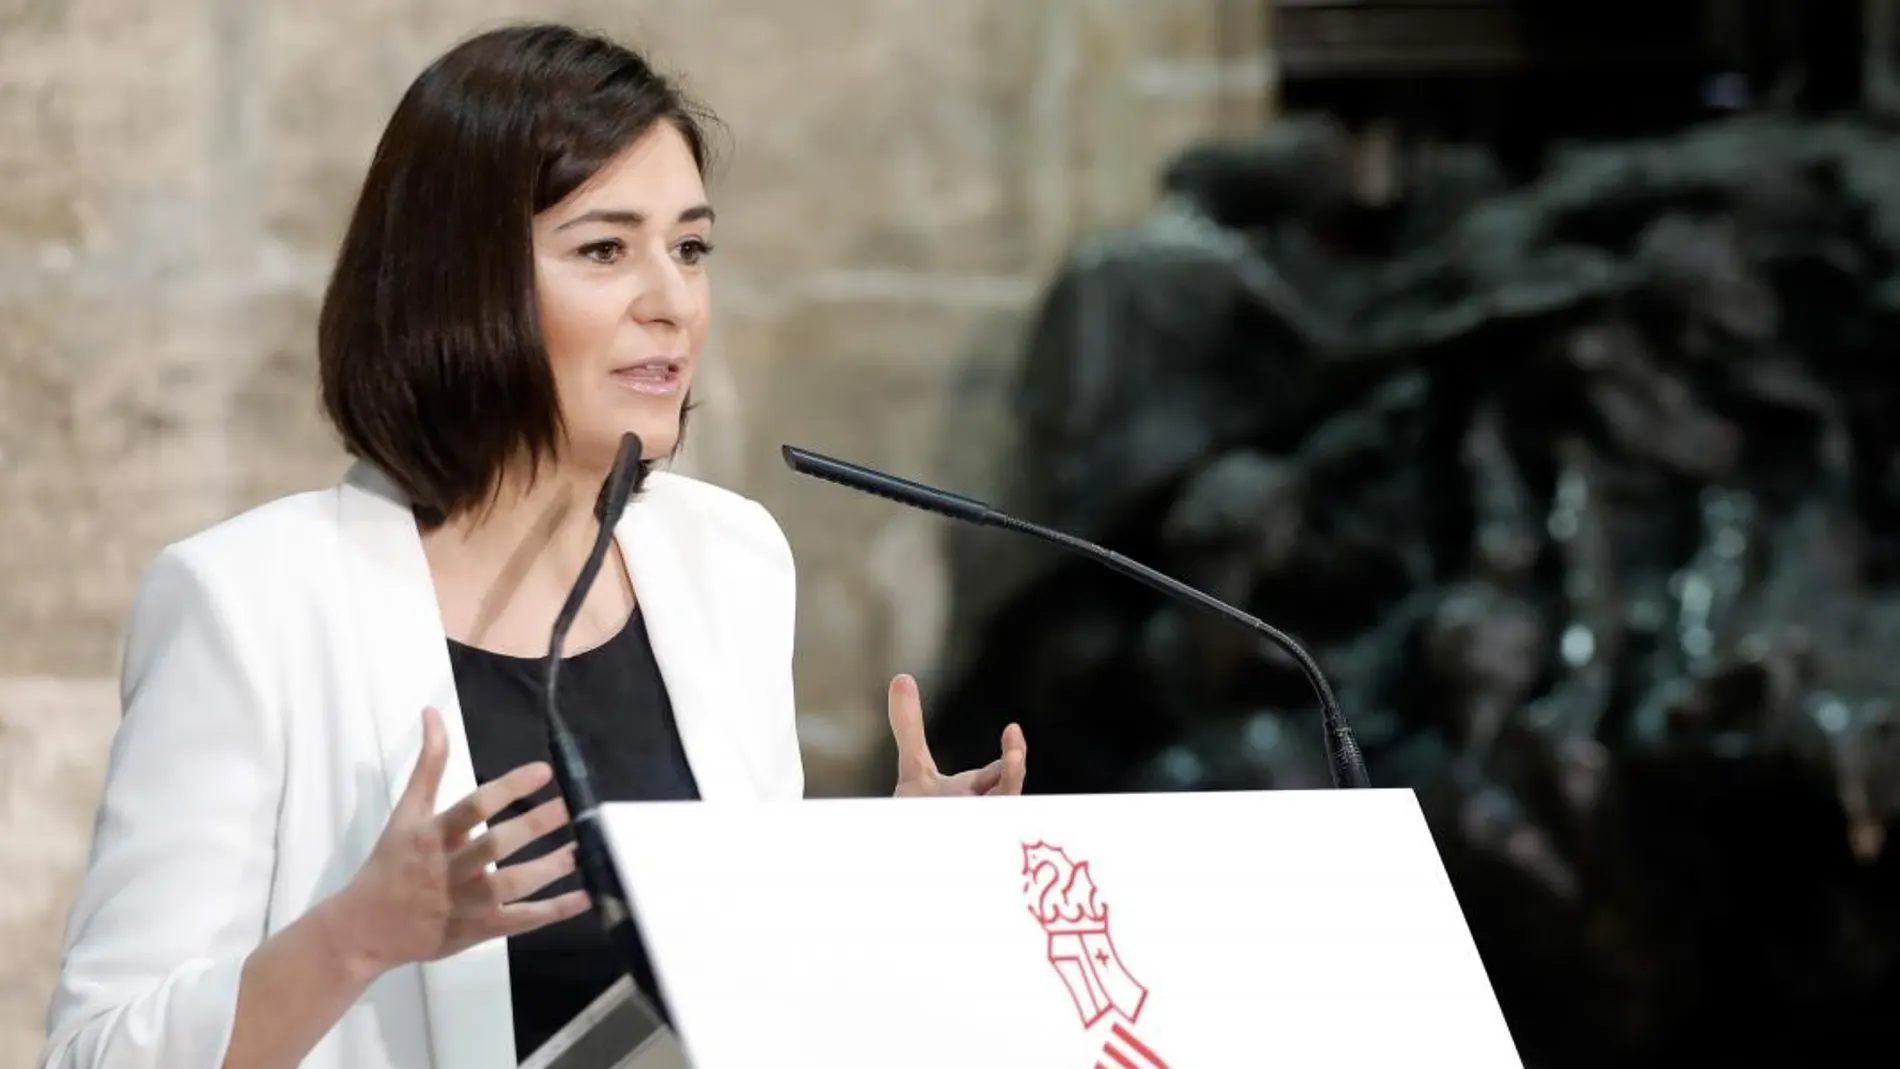 La consellera de Sanidad, Carmen Montón, participó ayer en la presentación de las ayudas al copago de tratamientos farmacológicos para personas desempleadas, que se celebró en el Palau de la Generalitat